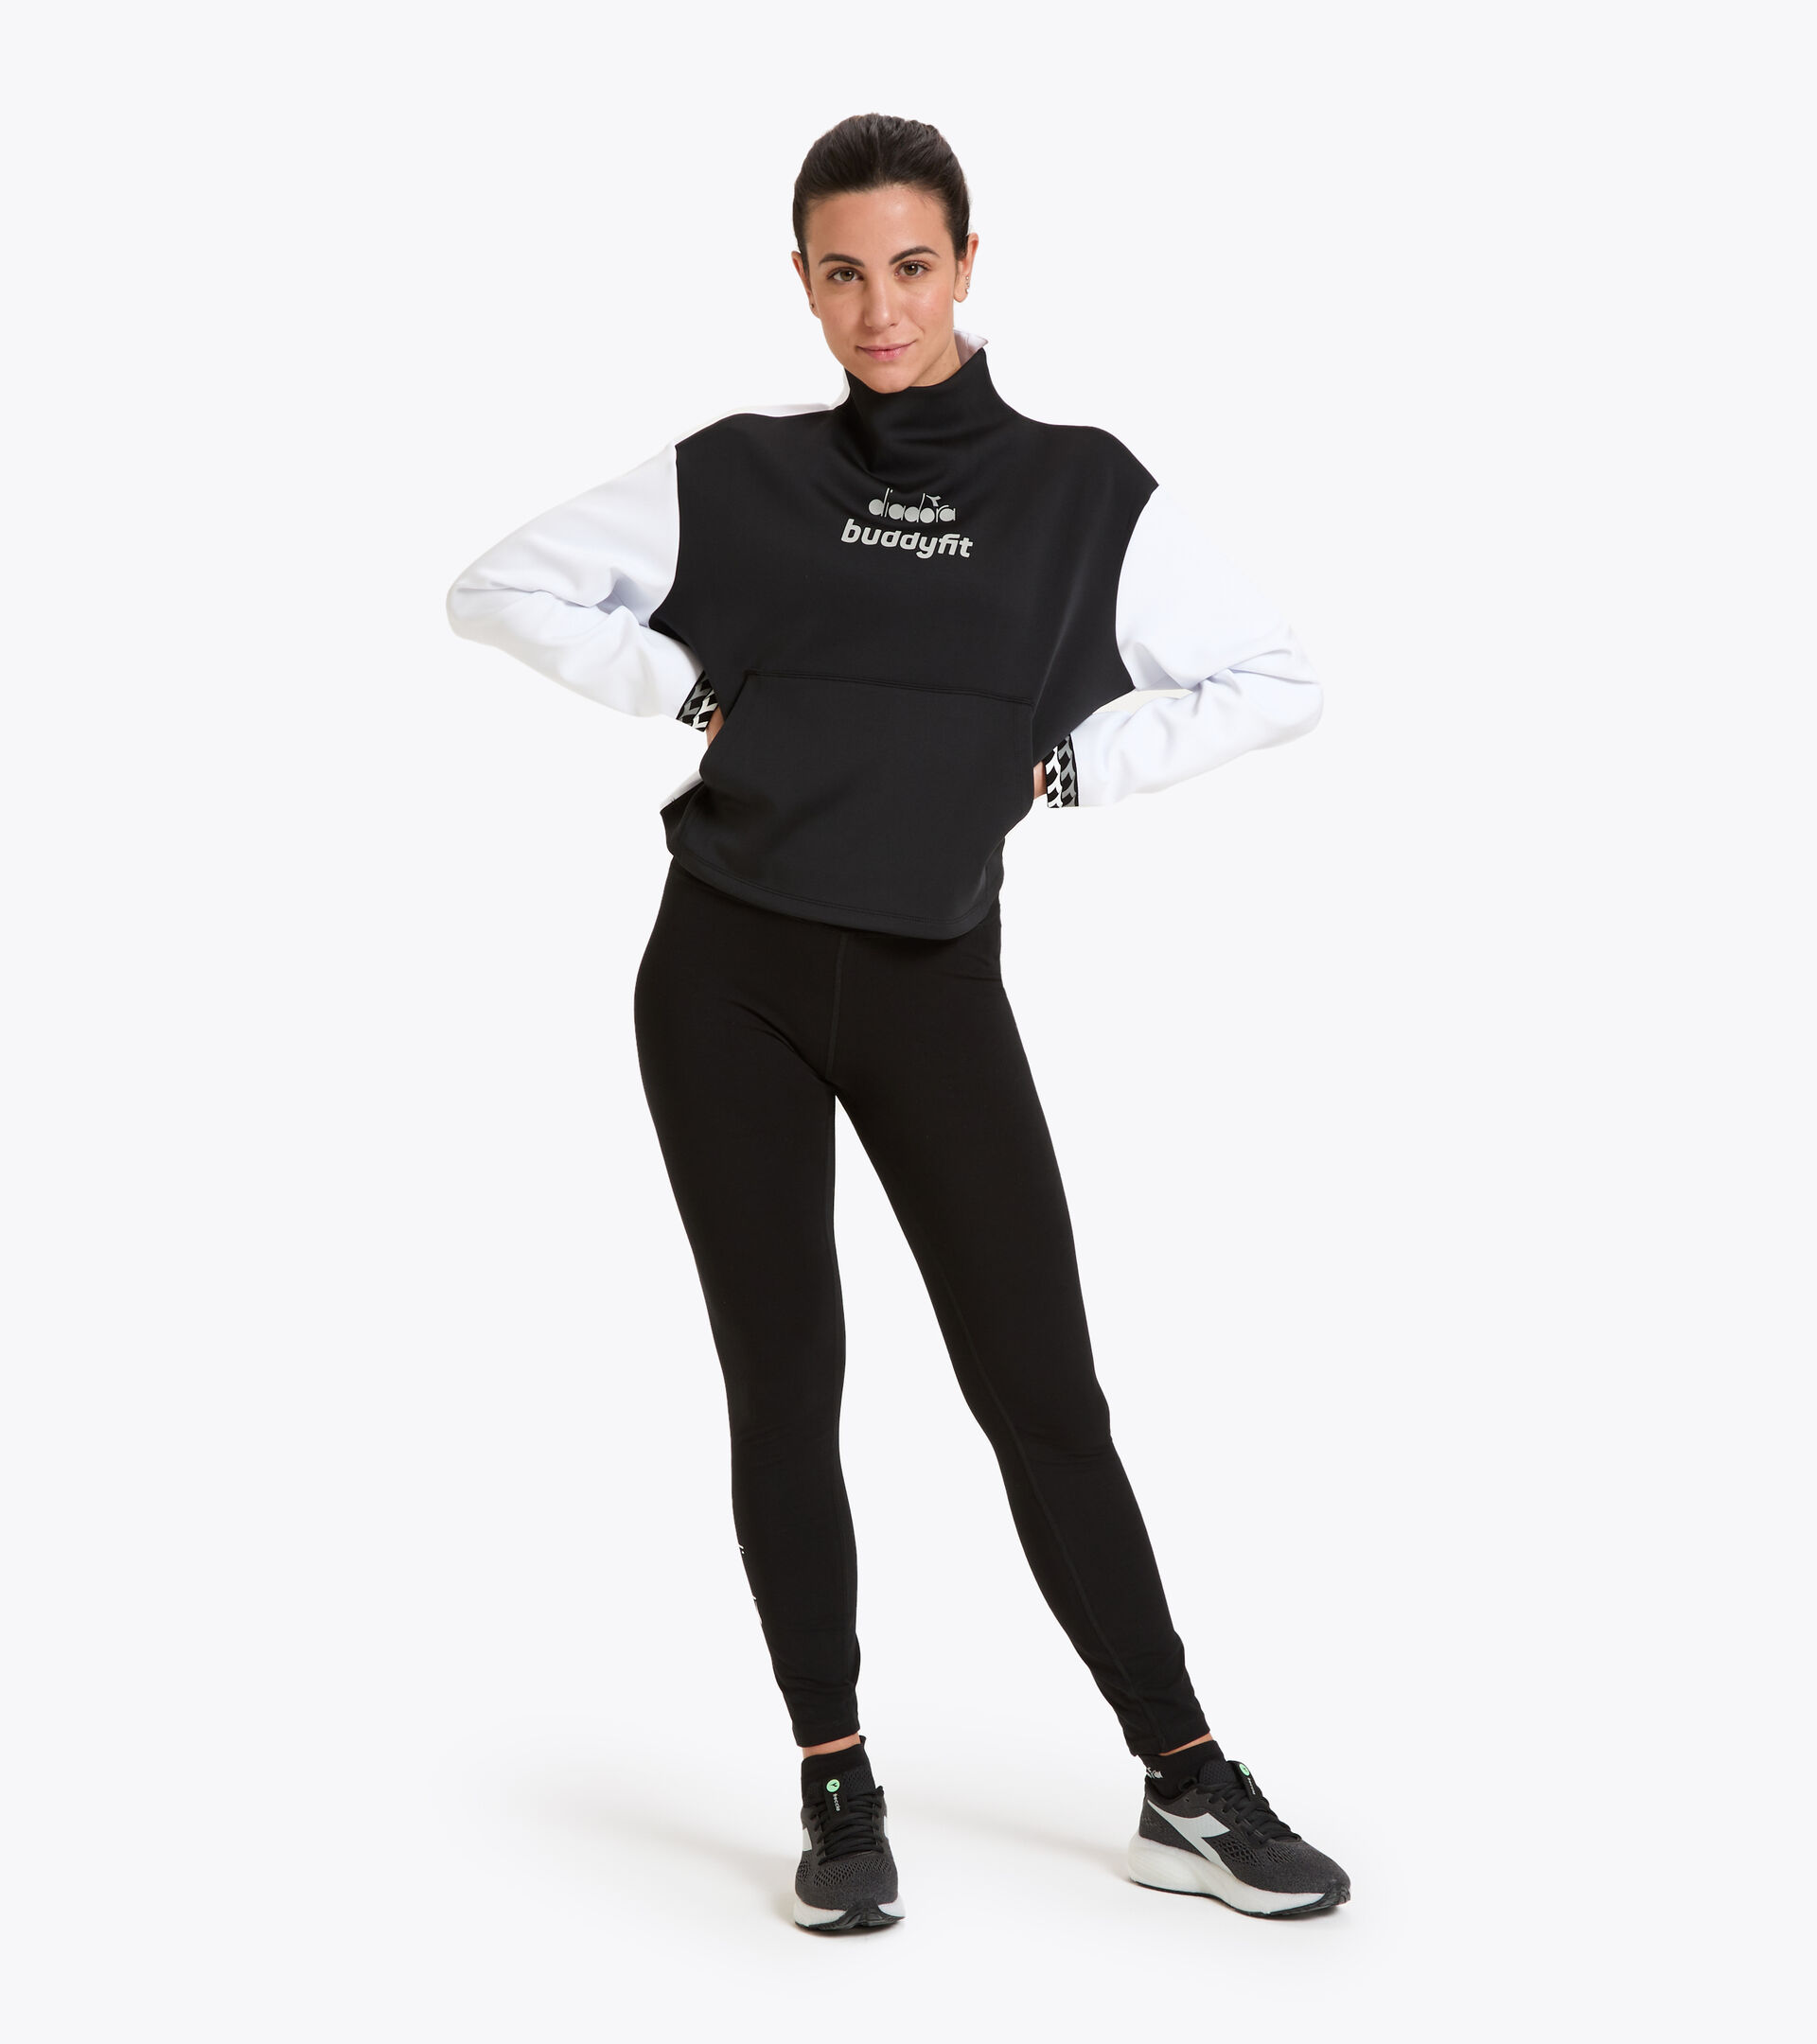 Workout-T-Shirt for women L. SWEAT BUDDYFIT BLACK - Diadora